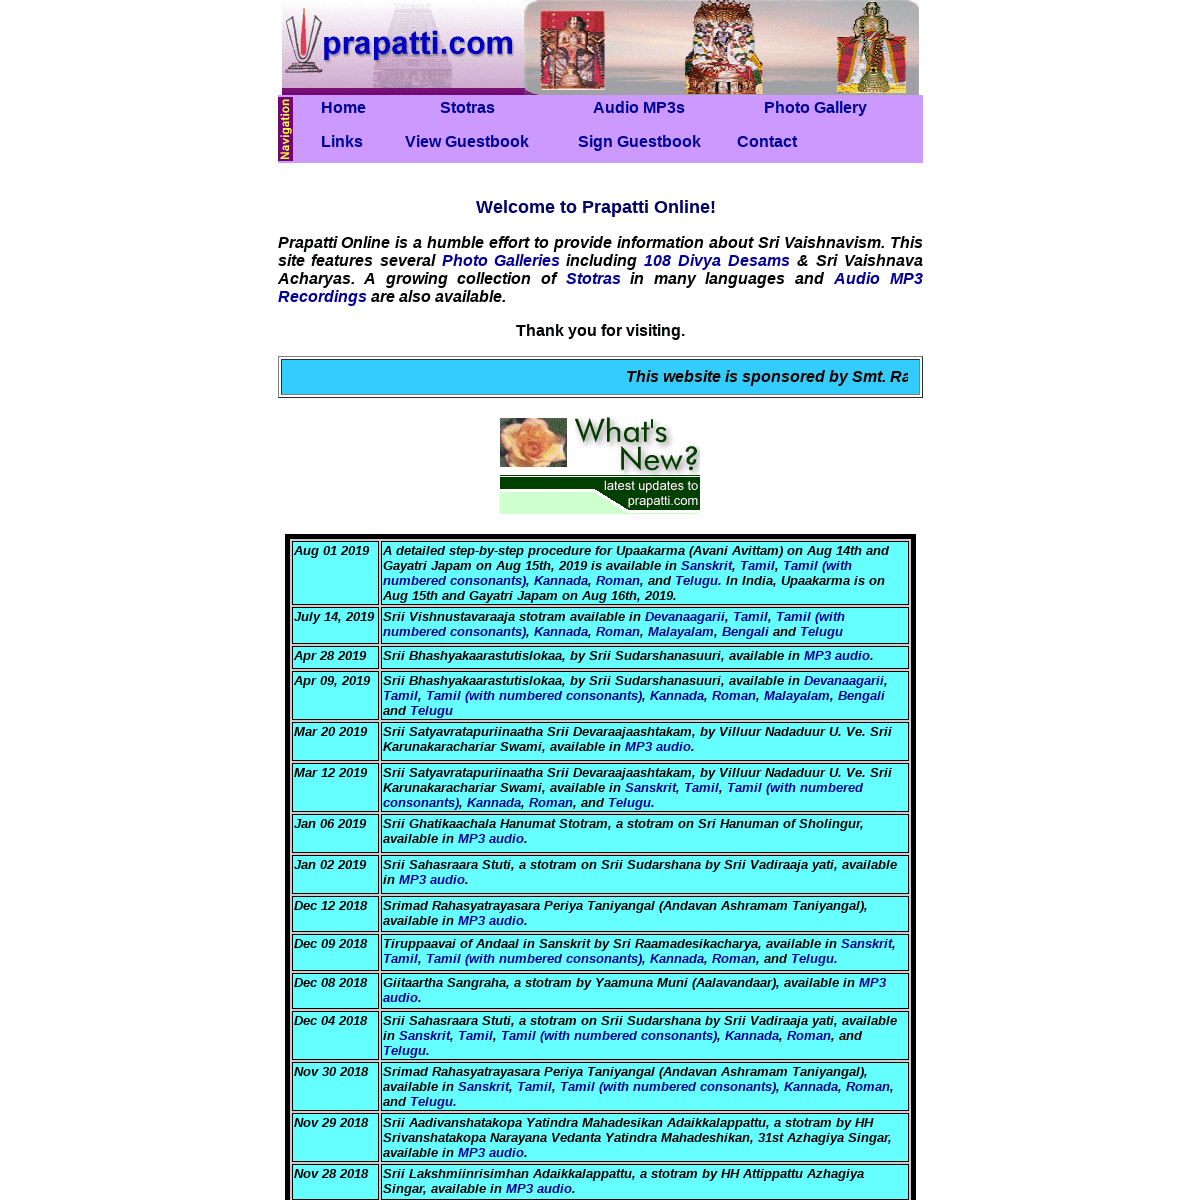 A complete backup of prapatti.com